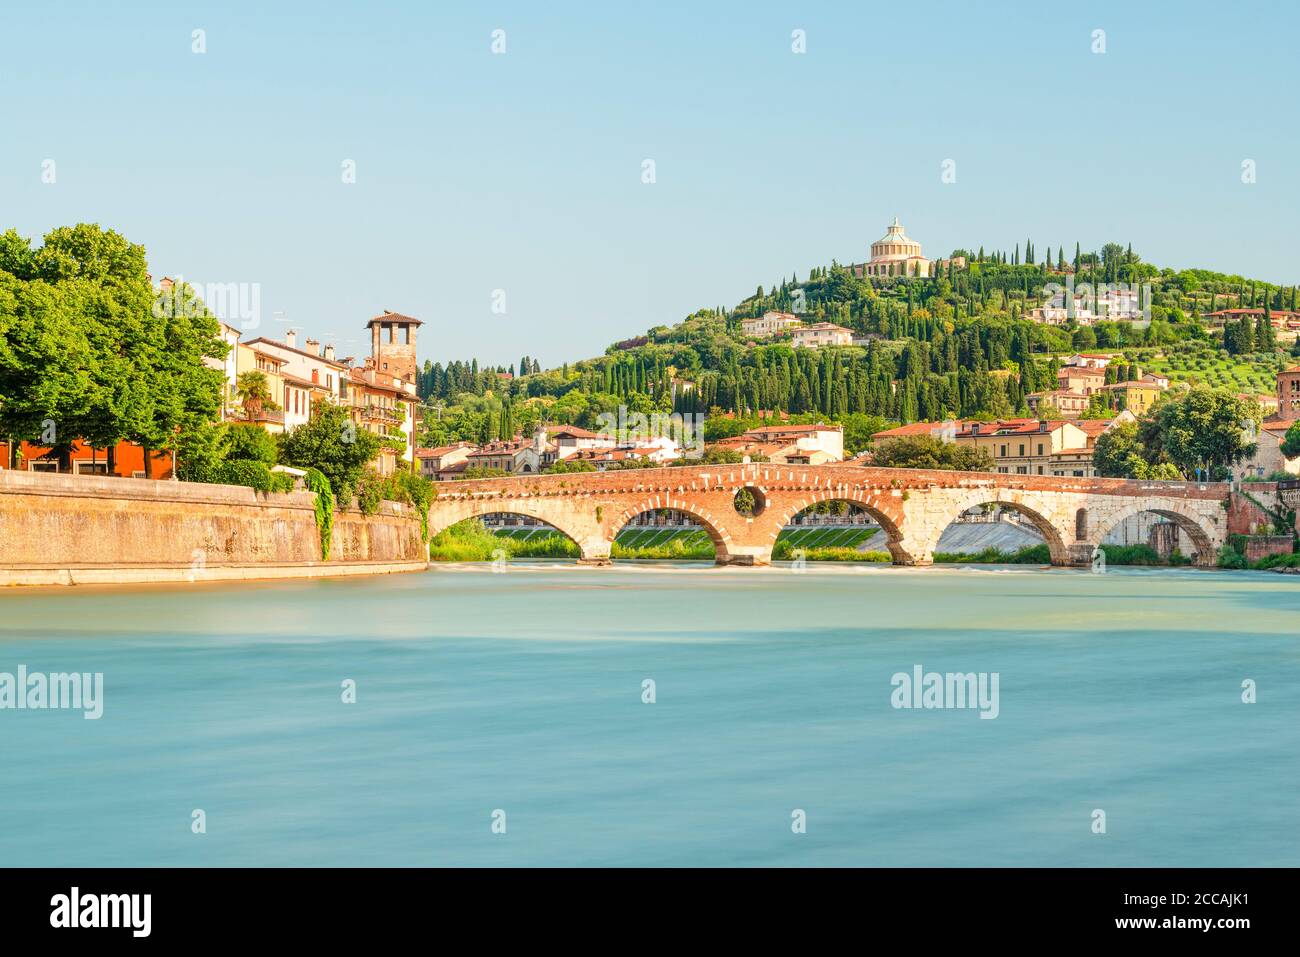 Il ponte romano ad arco di pietra sul fiume Adige nel centro storico di Verona, di fronte al paesaggio mediterraneo al sole del mattino, Italia Foto Stock